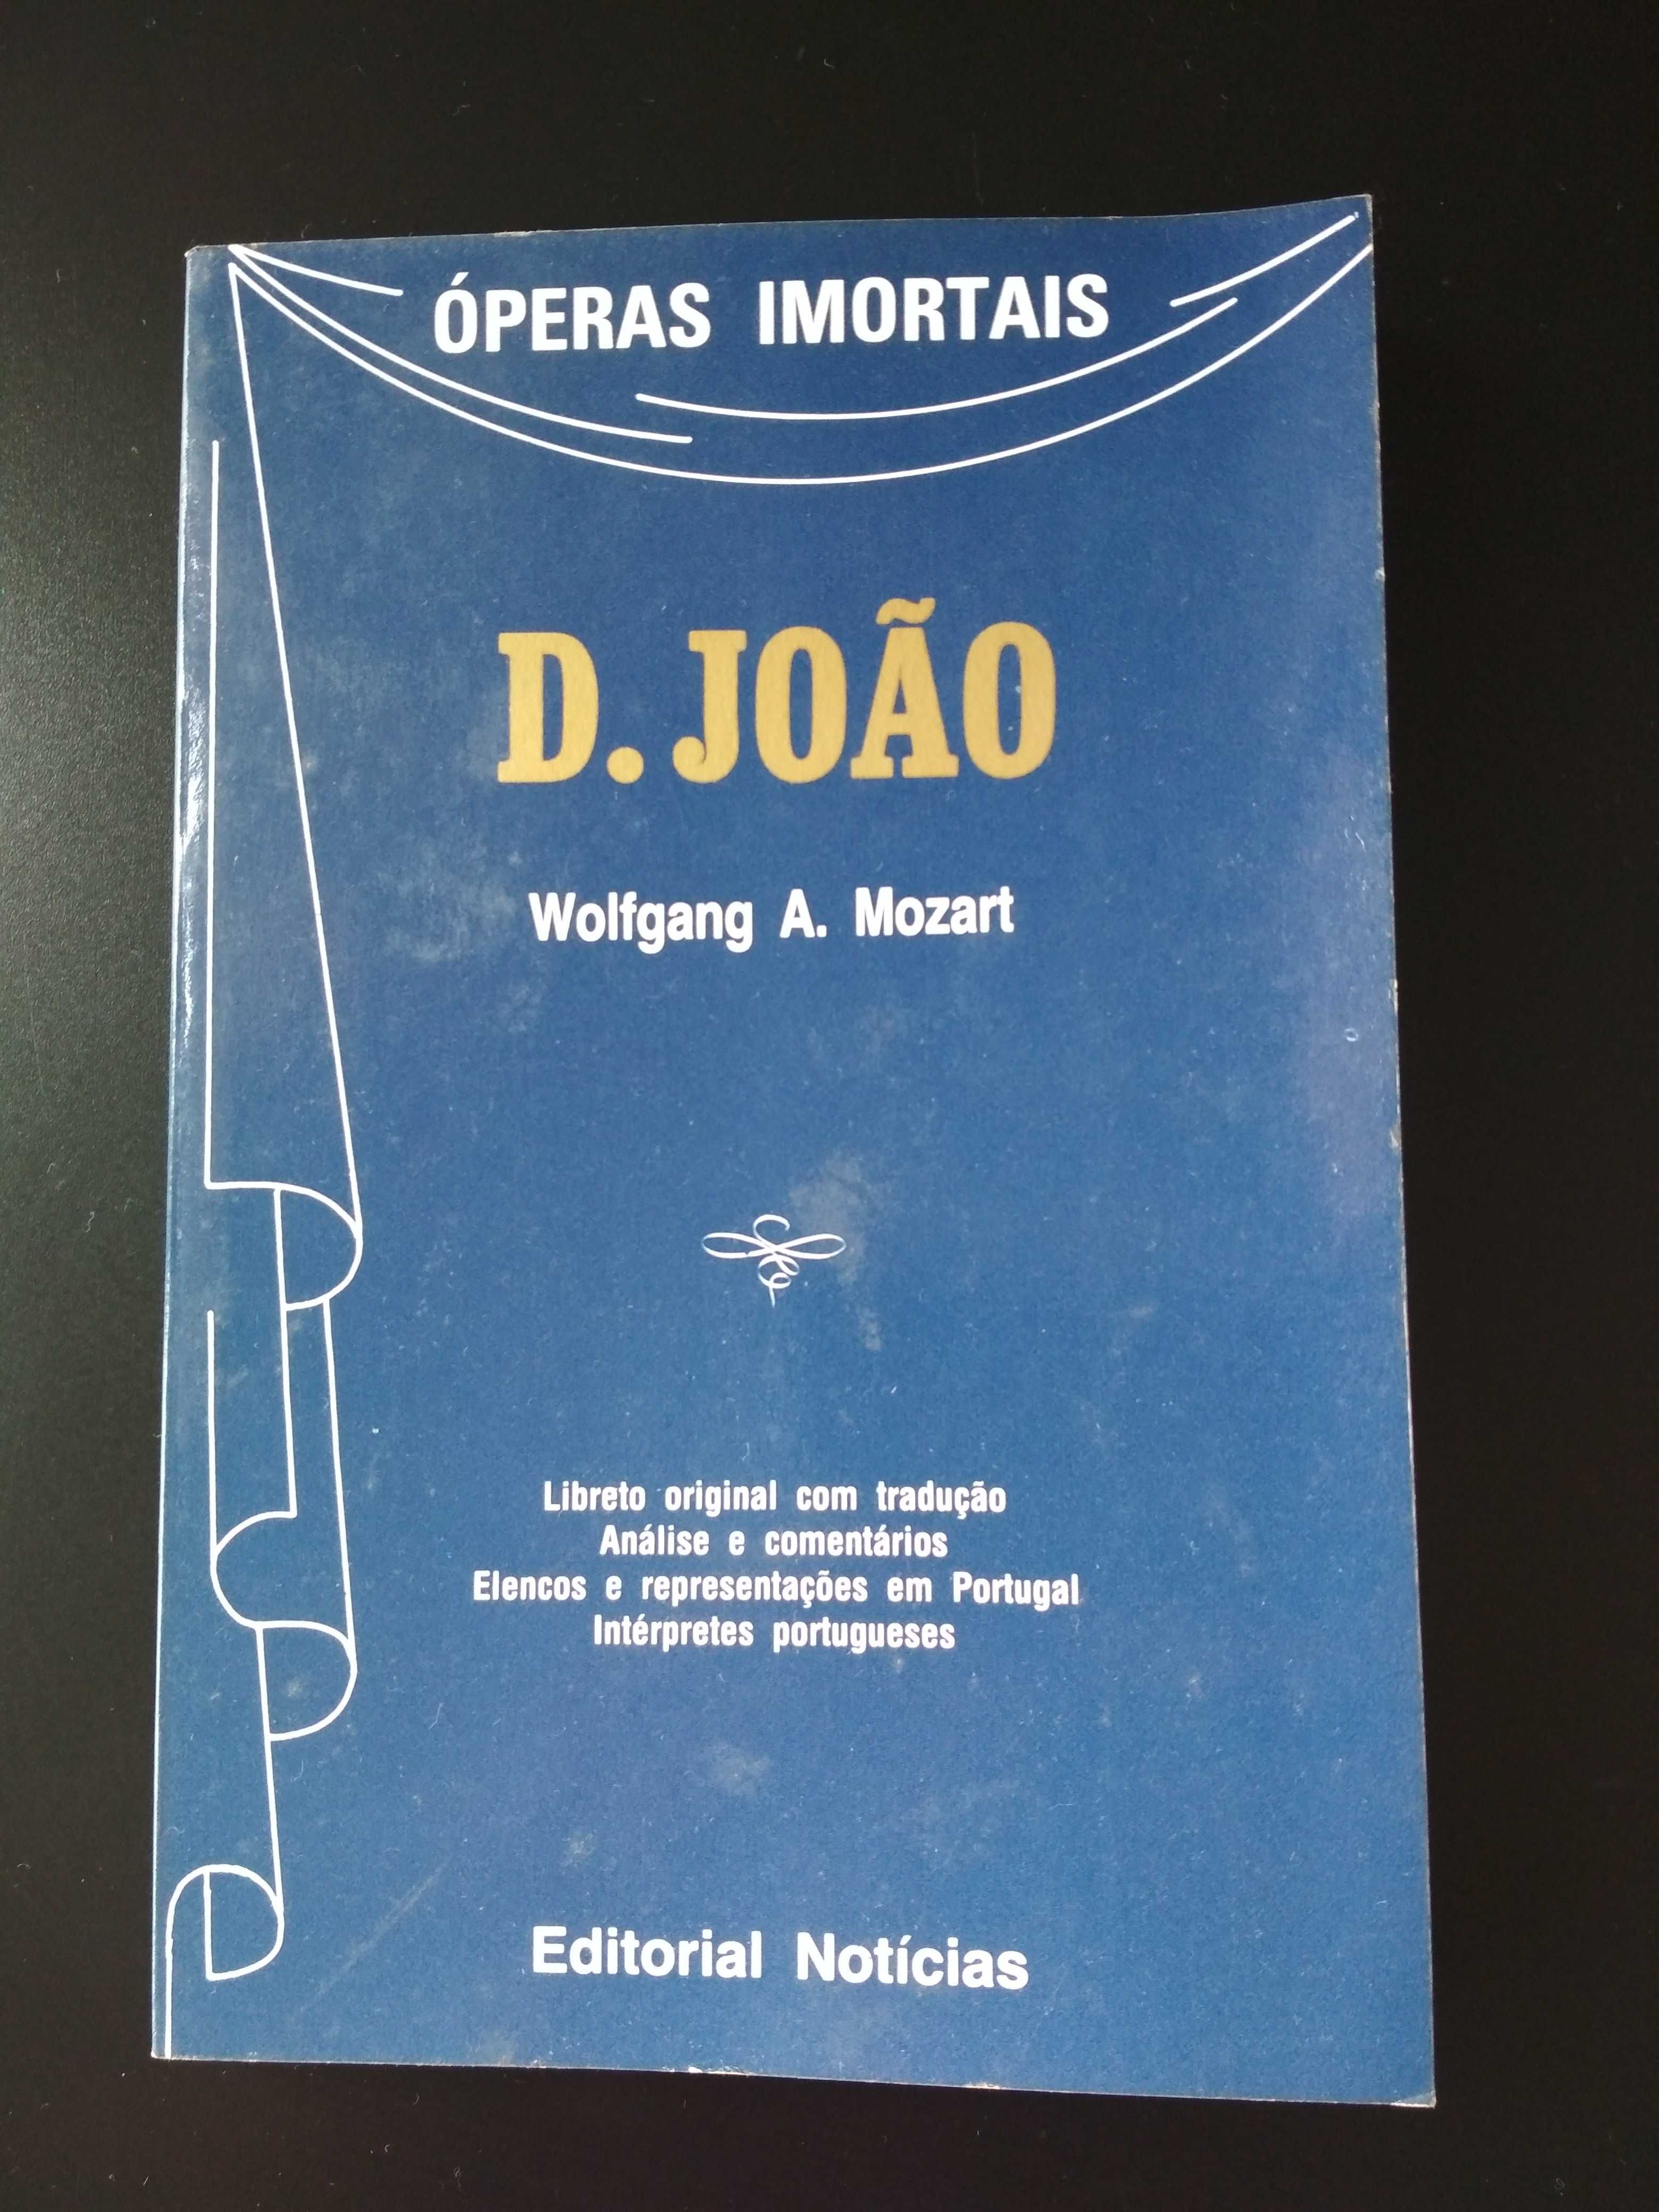 Colecção Óperas imortais  - D. João volume 15